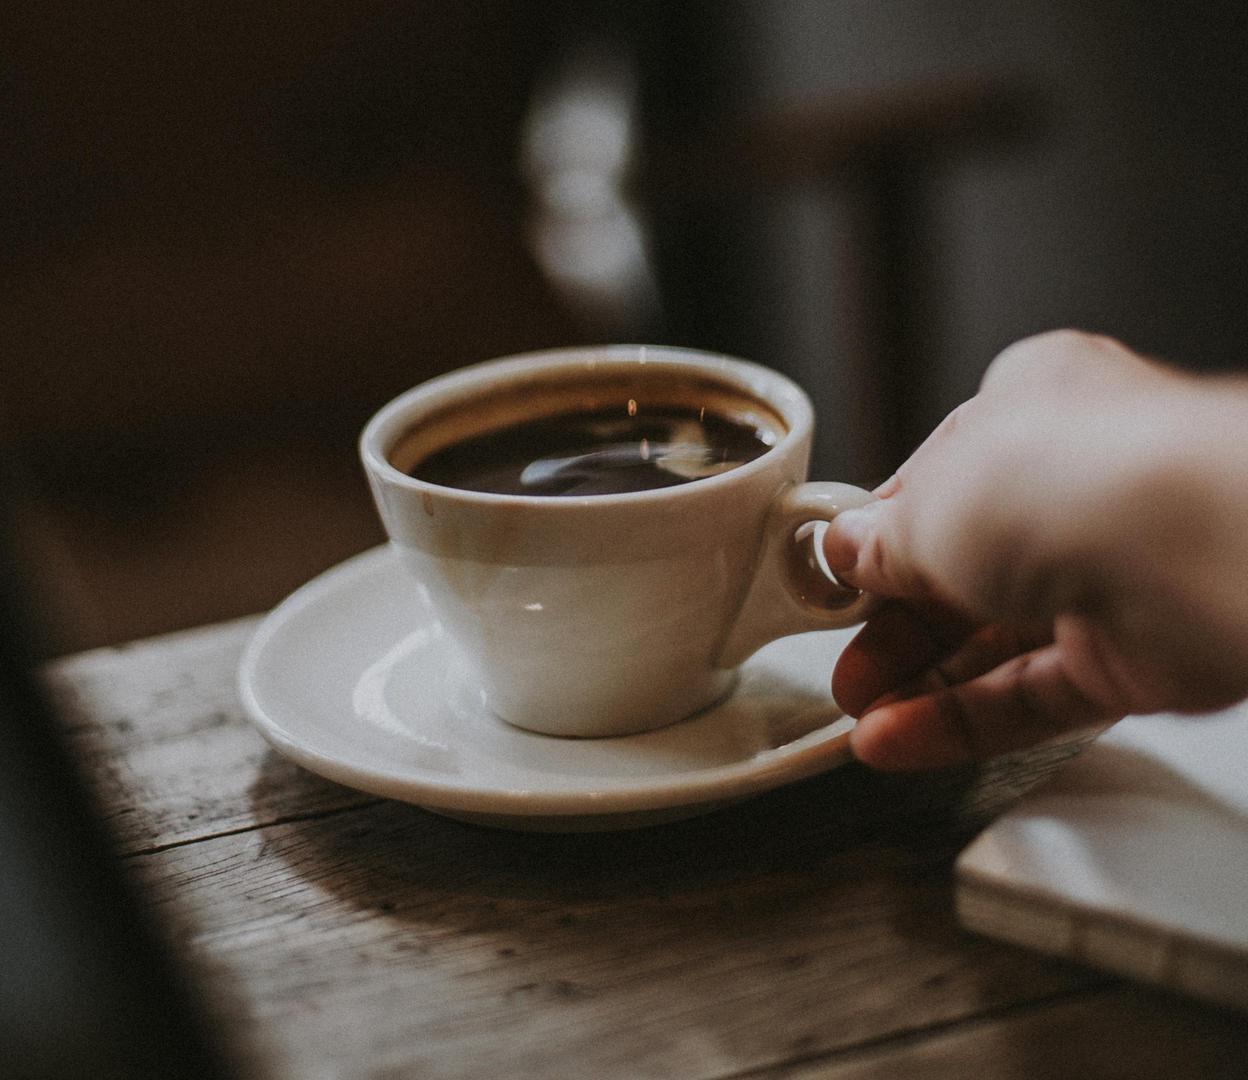 Kavu biste trebali izbjegavati piti ako ste prehlađeni, a posebice ako imate problema sa želucem. Kava dehidrira organizam pa je u stanjima kada vaše tijelo zahtijeva više hidratacije, ispijanje kave svakako loša ideja. 